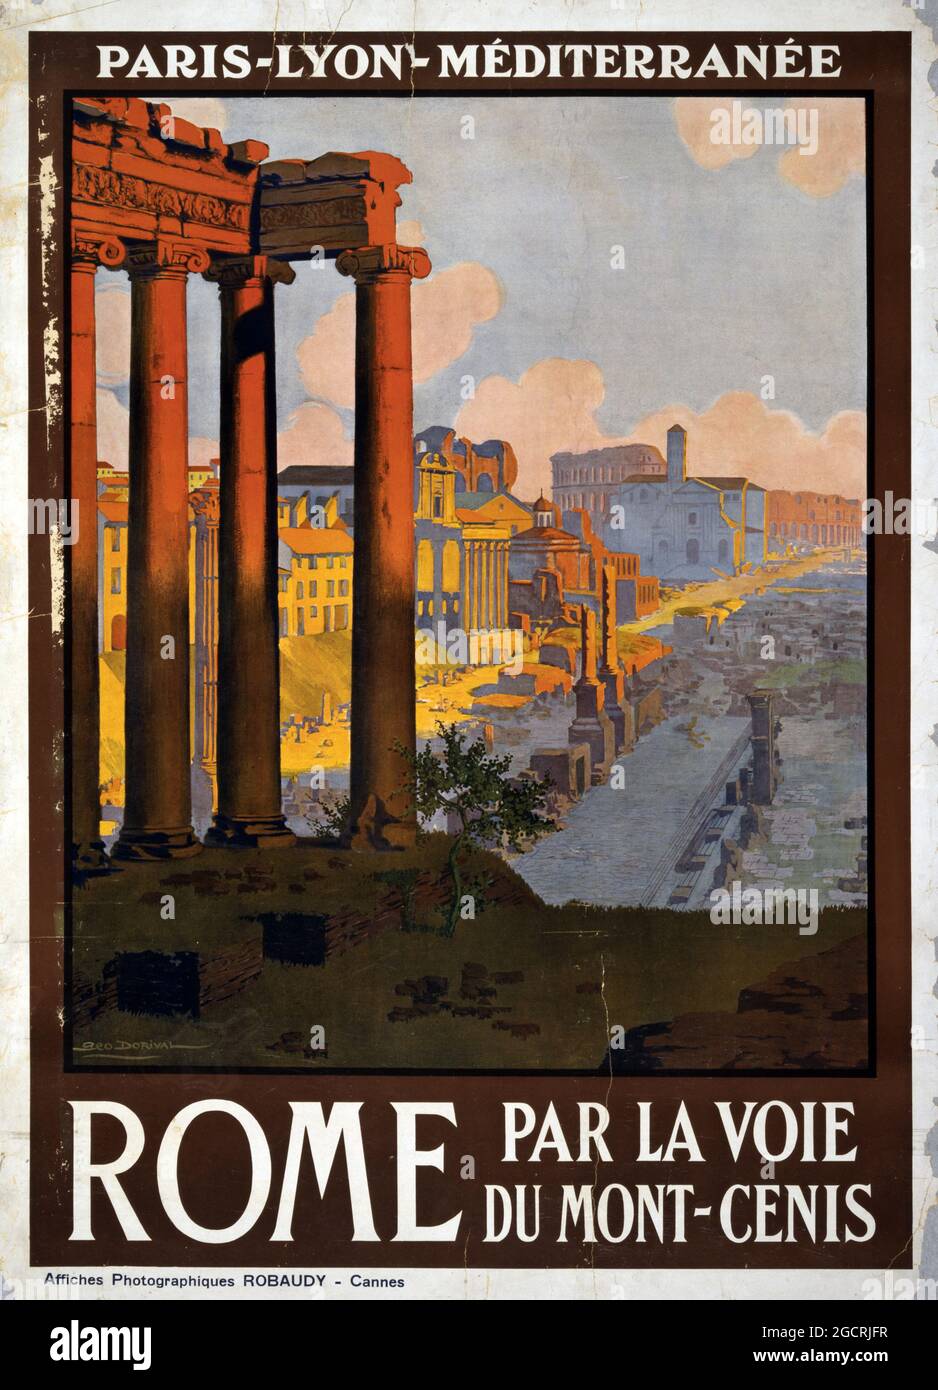 Rome par la voie du Mont-Cenis – affiche de voyage d'époque Italie. Publicité rétro. Œuvres d'art de Geo Dorival des années 1920. Banque D'Images